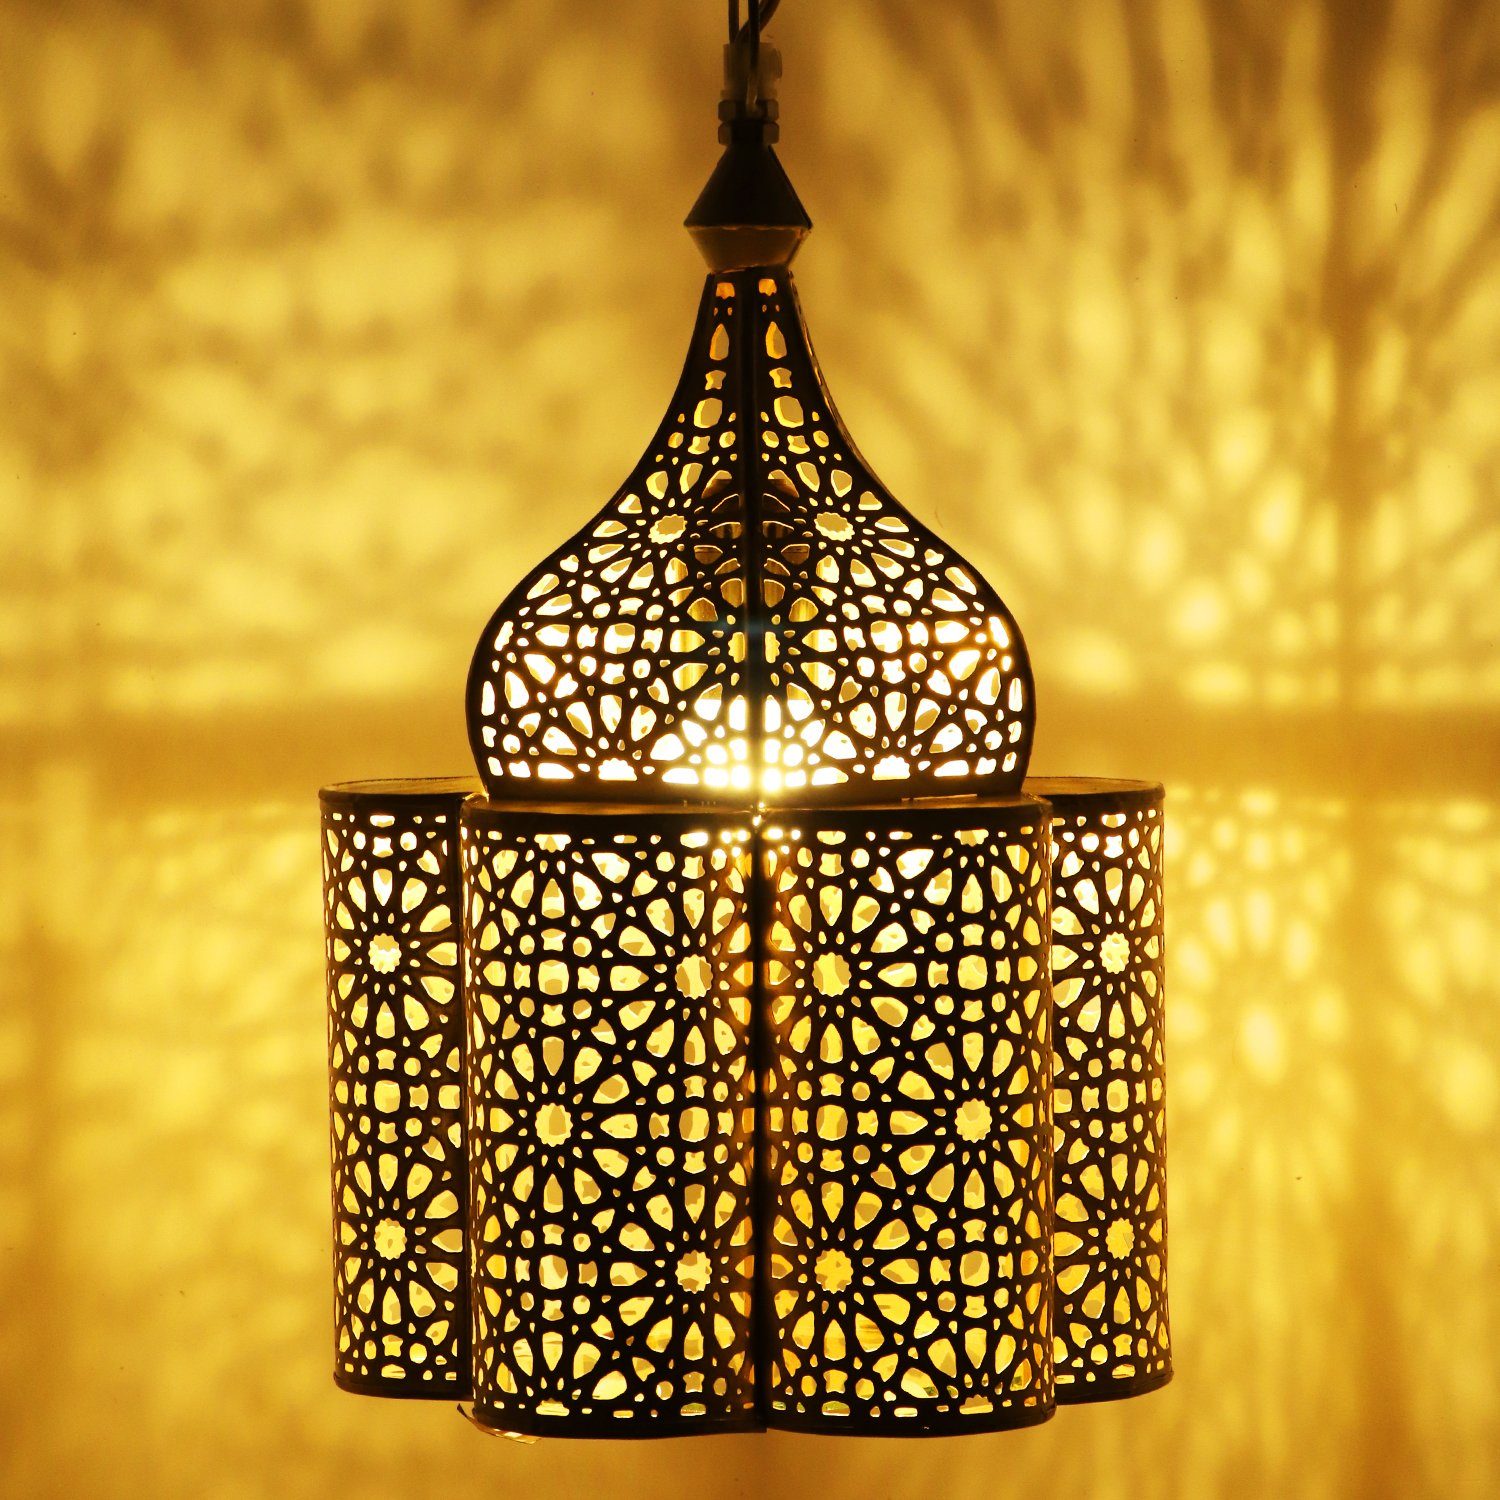 Marokkanische Orientalische Laterne Lampe Stehleuchte Deckenlampe Led Leuchte 